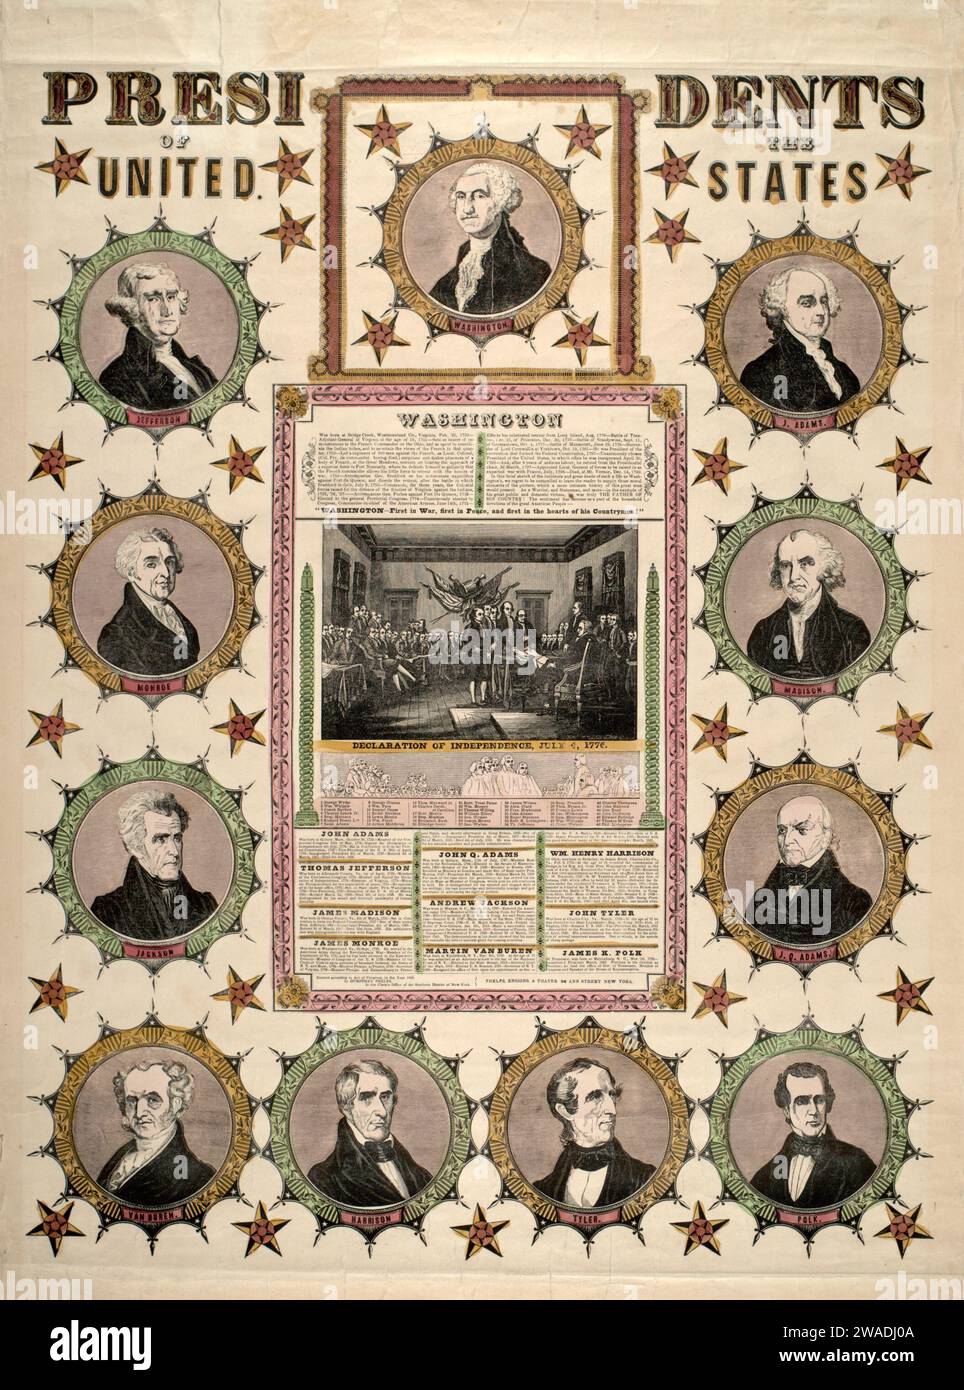 Lithographie, 'Presidents of the United Statess' ca. 1846, montre également des portraits de présidents américains et la signature de la Déclaration d'indépendance le 4 juillet 1775 Banque D'Images